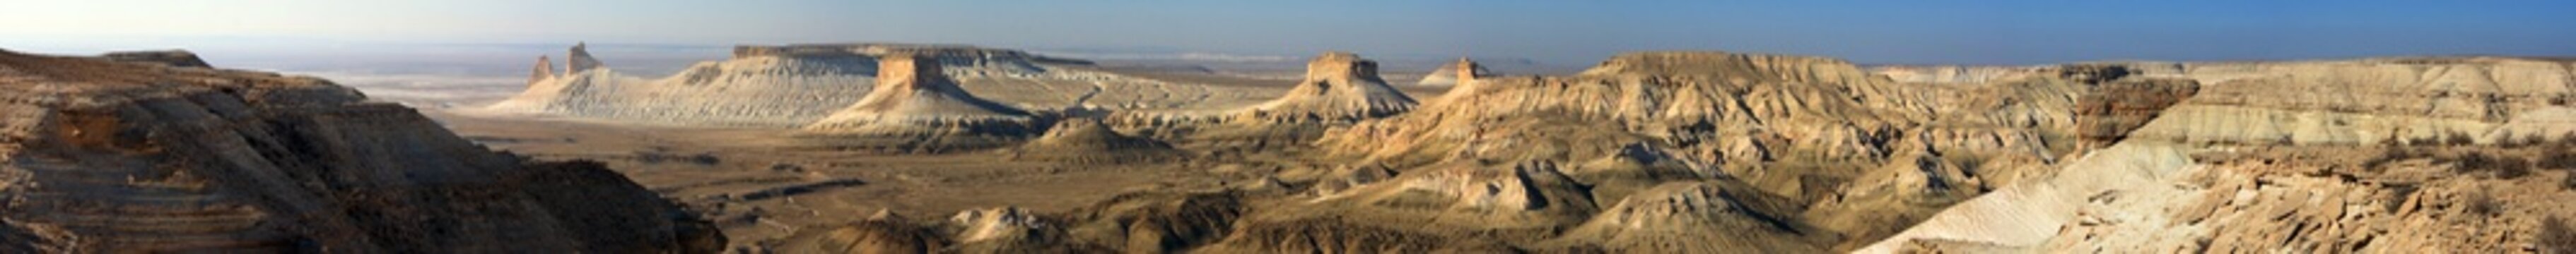 Western Kazakhstan. Ustyurt plateau. A panoramic view of Bozzhira from the upper plateau.